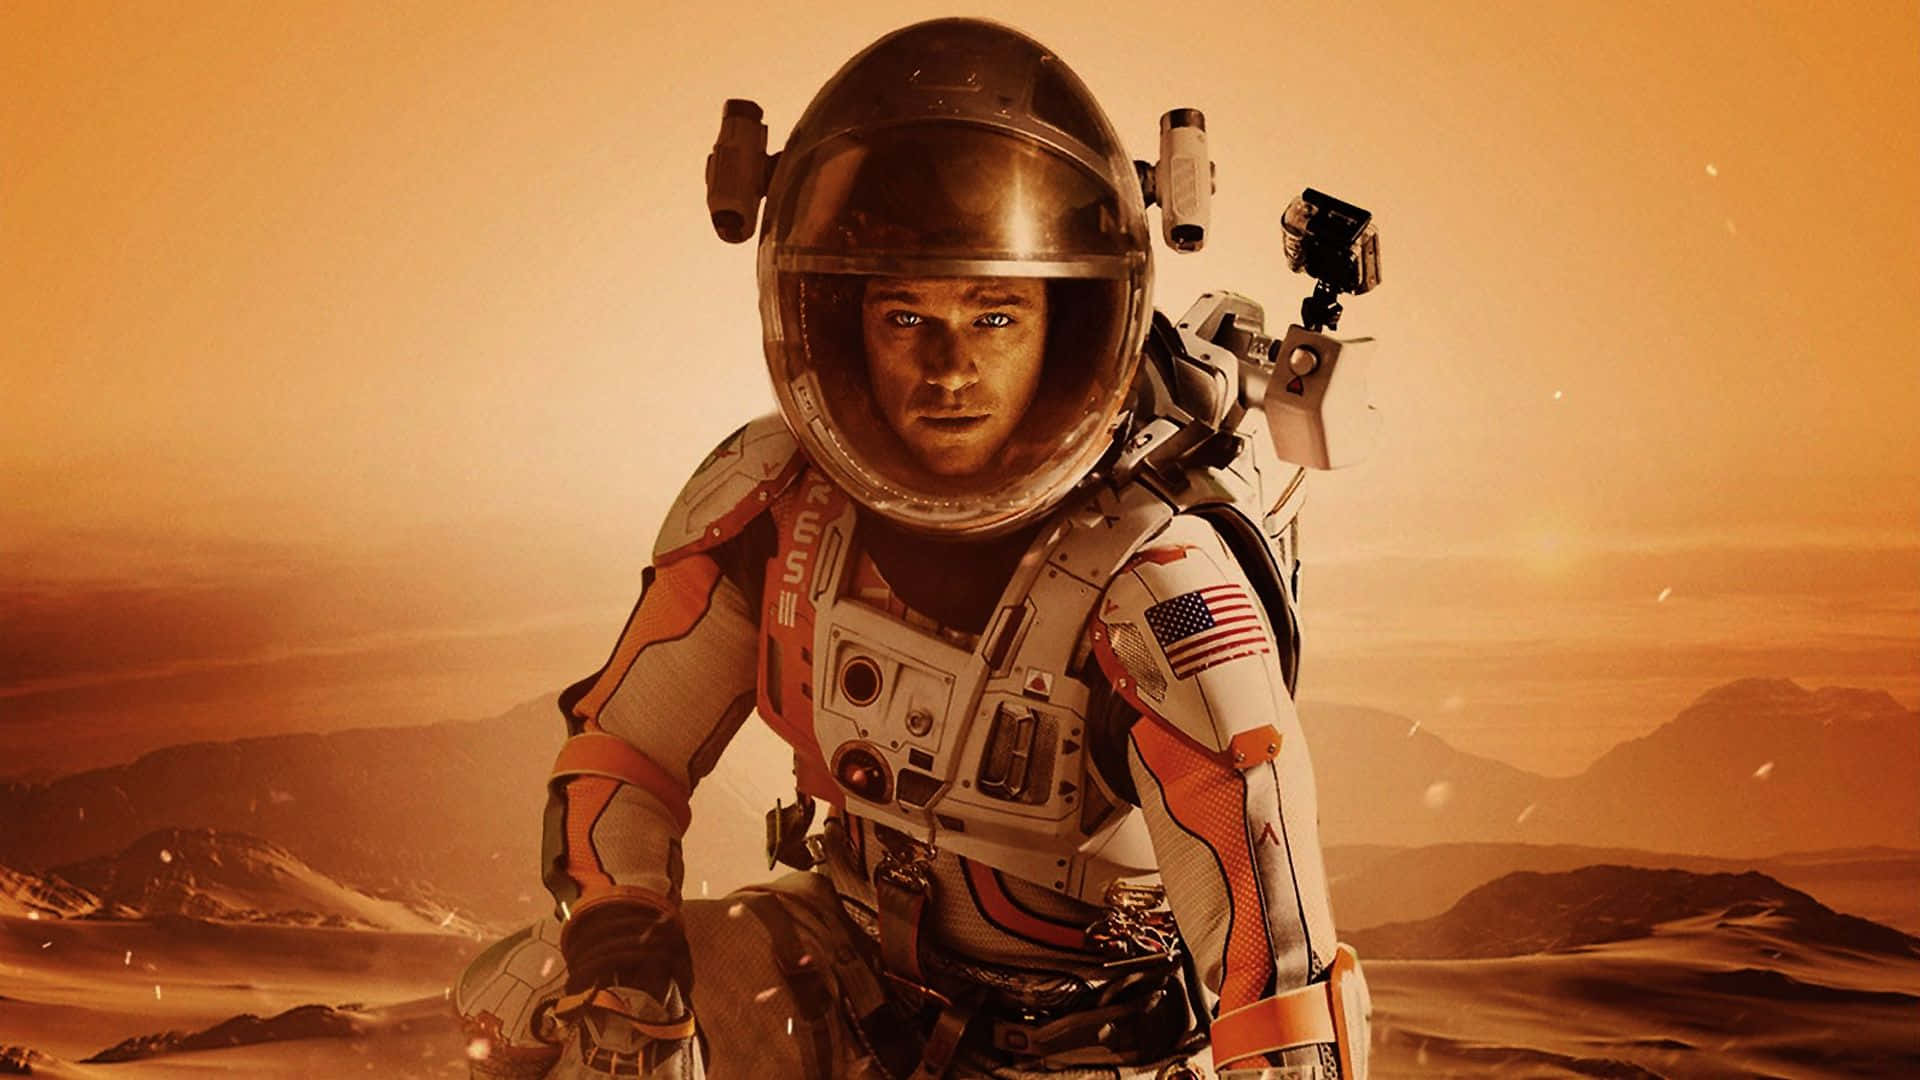 Matt Damon As Mark Watney Standing On The Harsh Martian Landscape Background